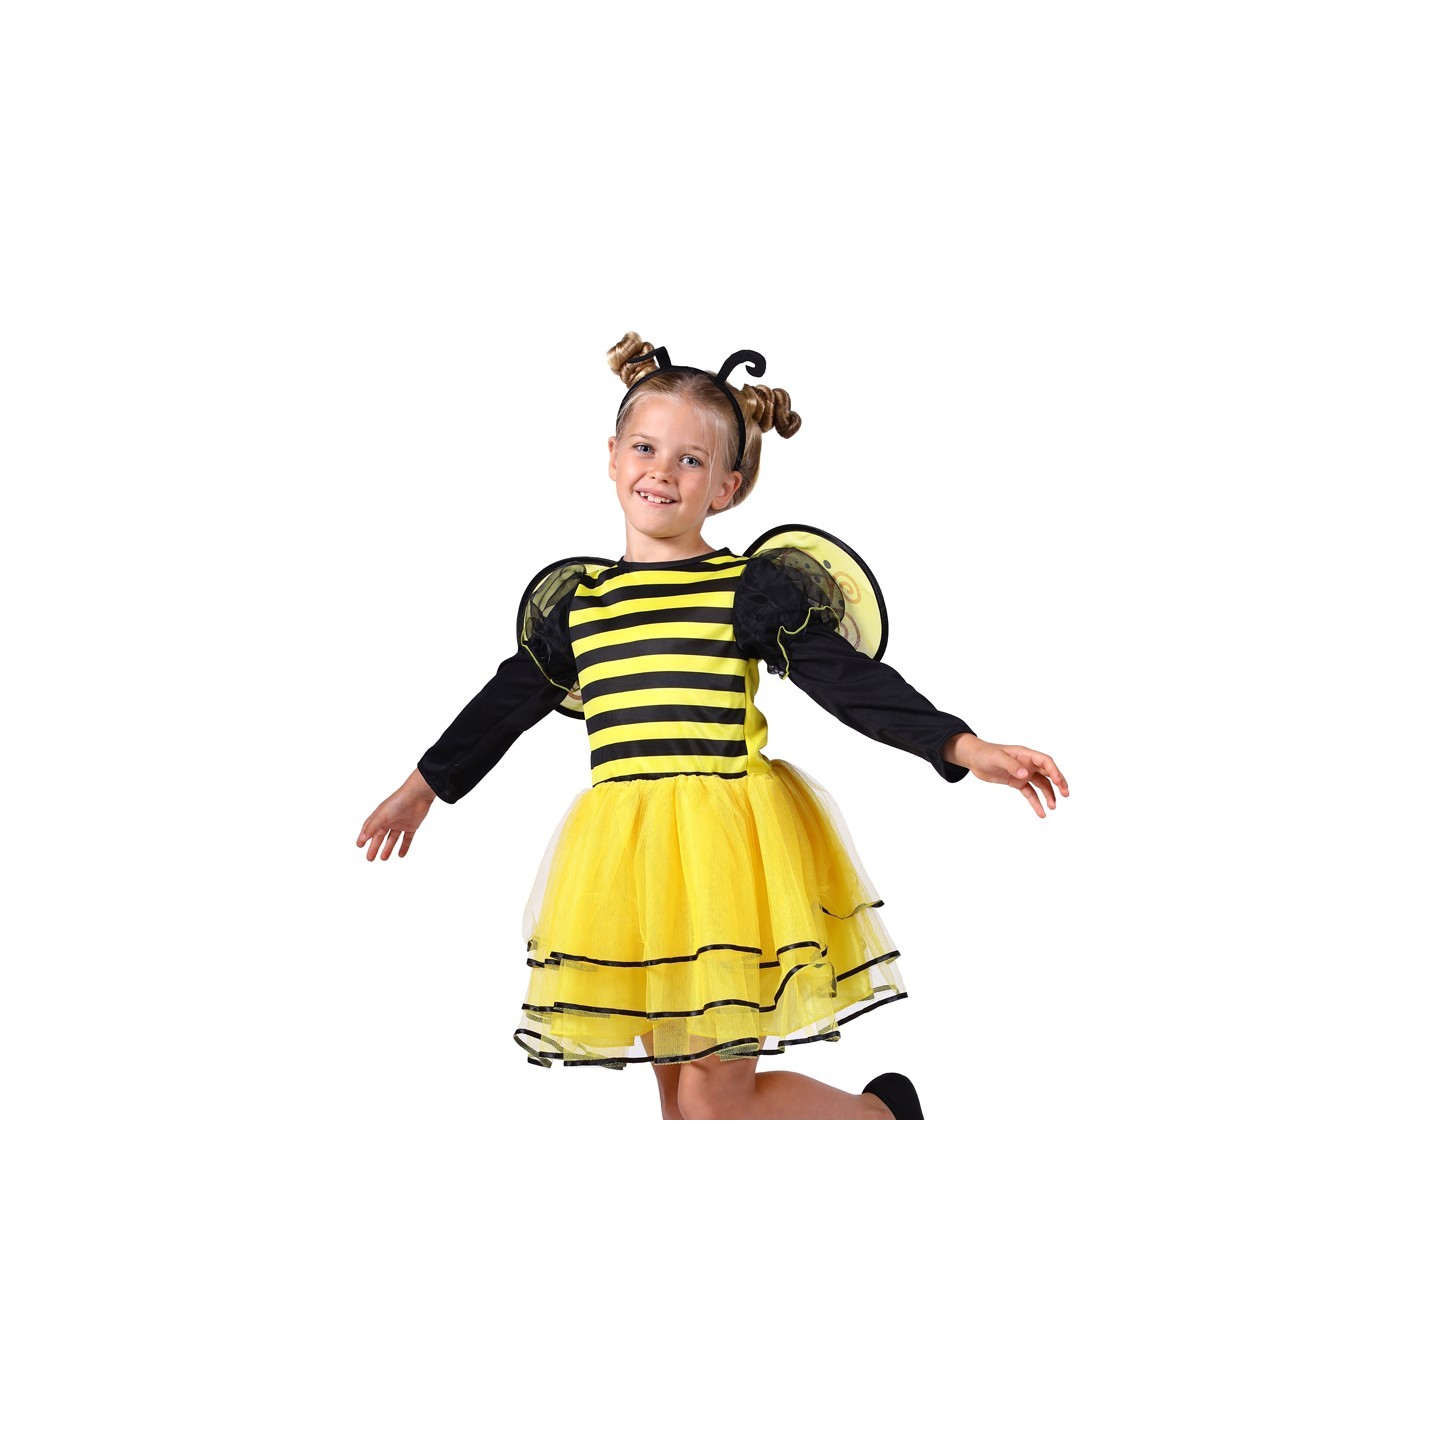 verlamming Roos Fobie Bijen kostuum kind Maya| Jokershop.be - Dieren Carnavalskleding